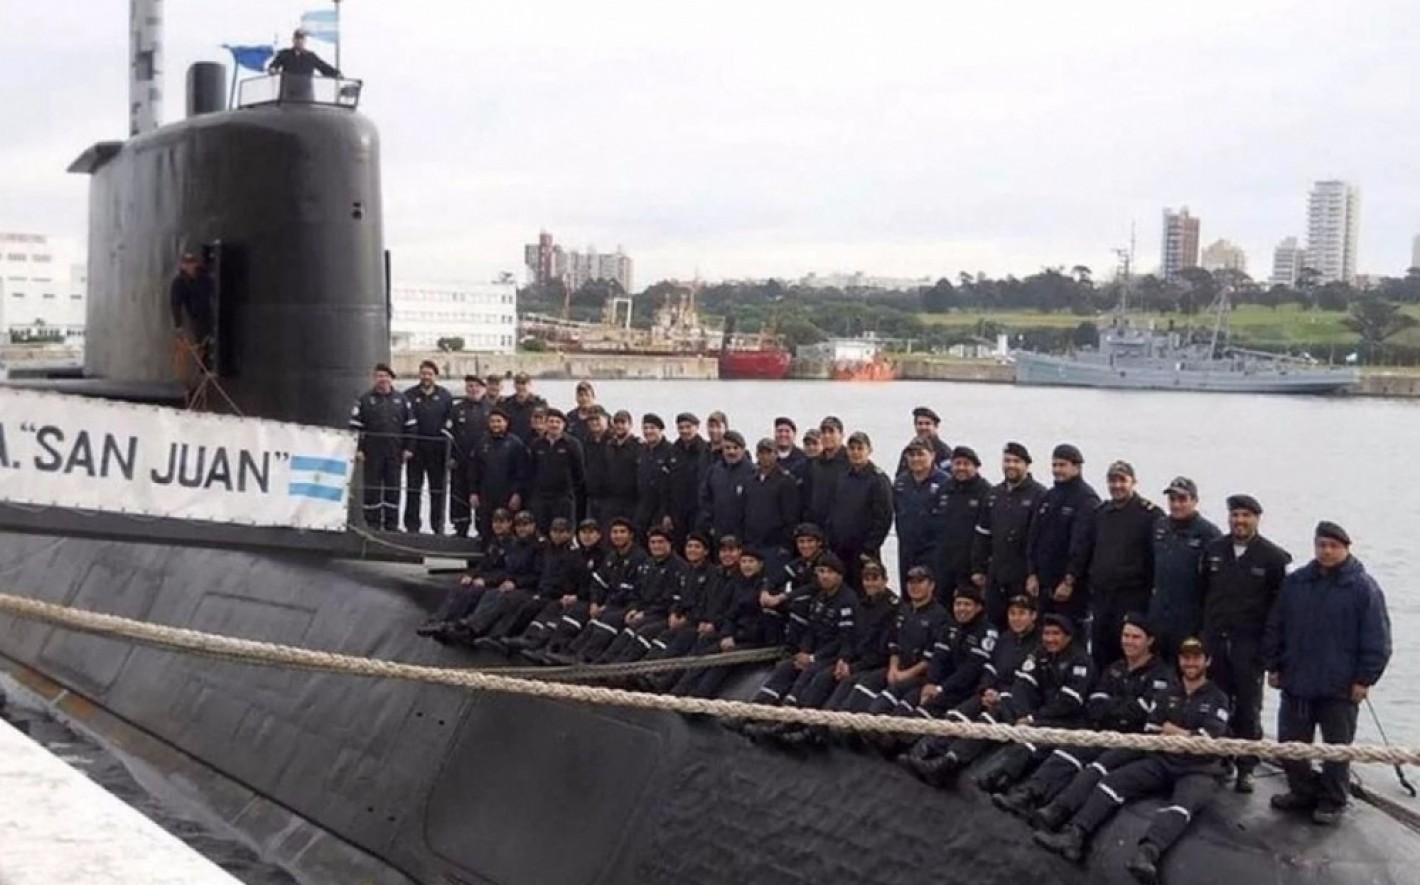 El ARA “San Juan” fue encontrado por Chile, reconoce tardíamente almirante  argentino | Infogate